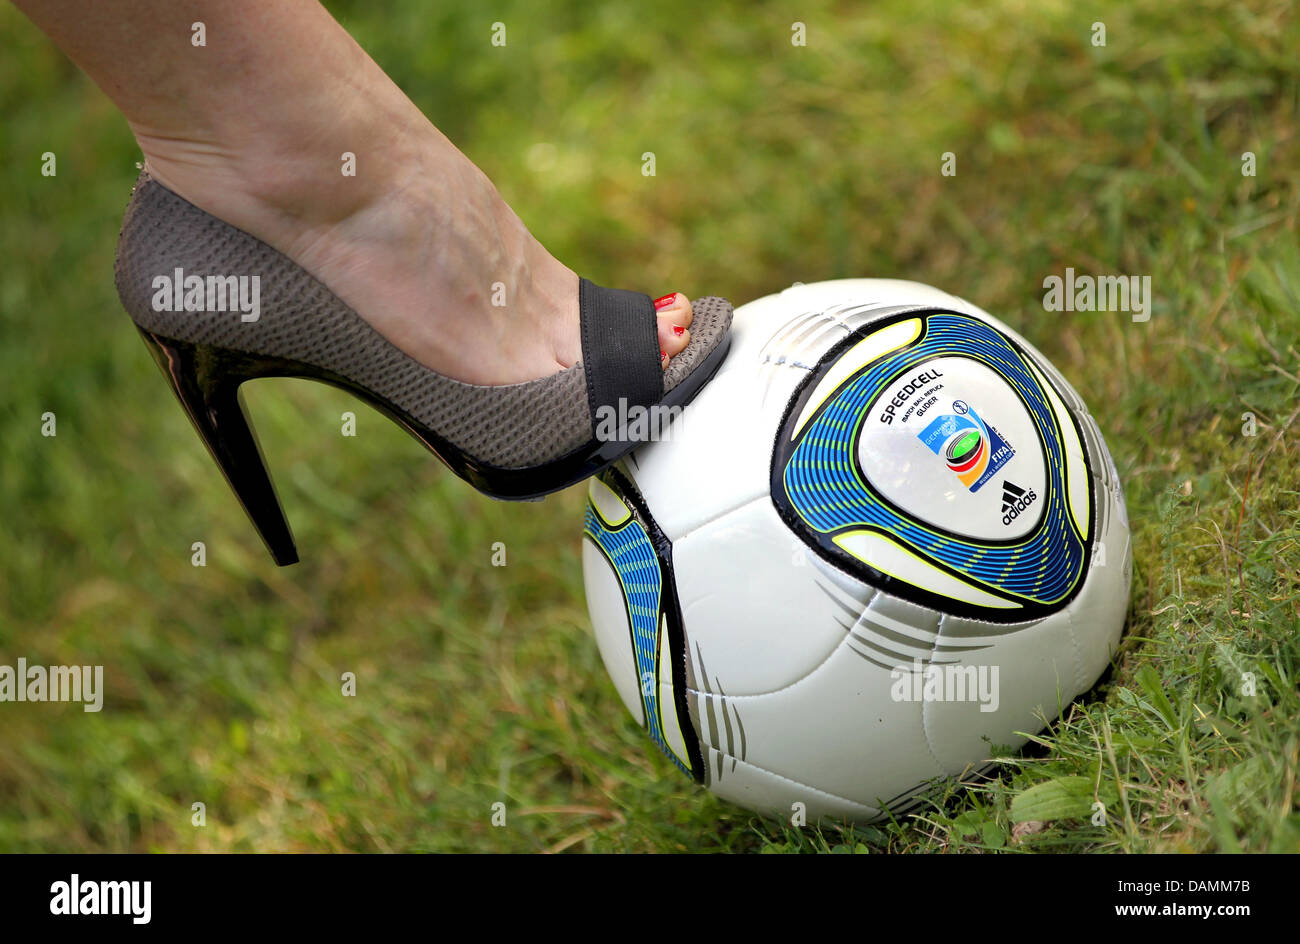 Une femme dans une chaussure à talon haut se dresse sur un ballon de  football à Berlin, Allemagne, 22 juin 2011. L'équipe féminine de soccer  jouera contre le Canada dans le match